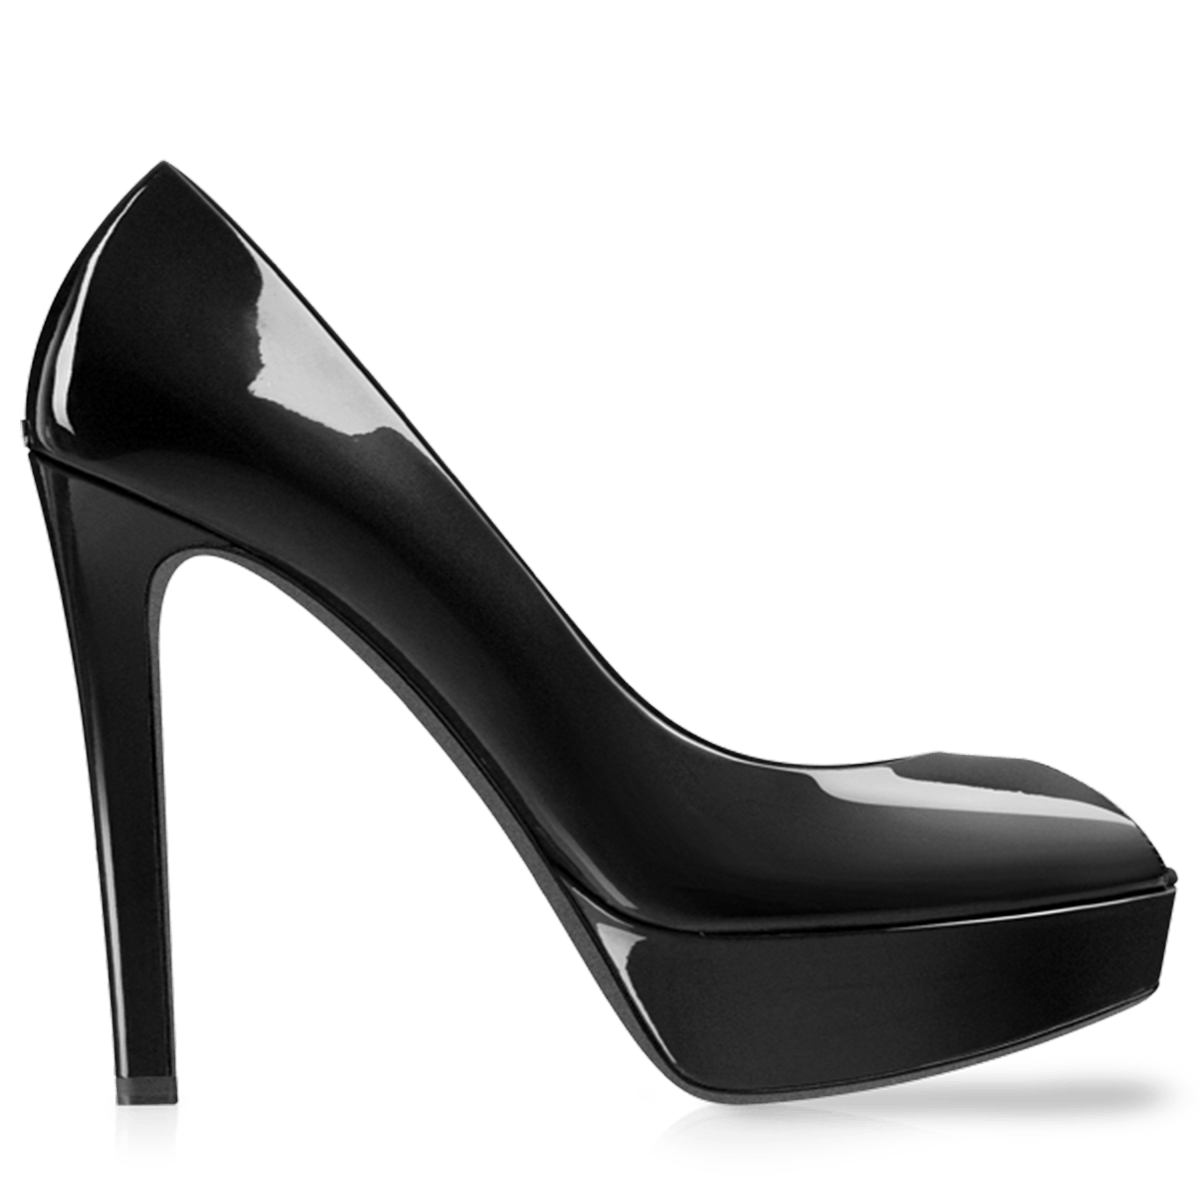 Black Heels Transparent Image